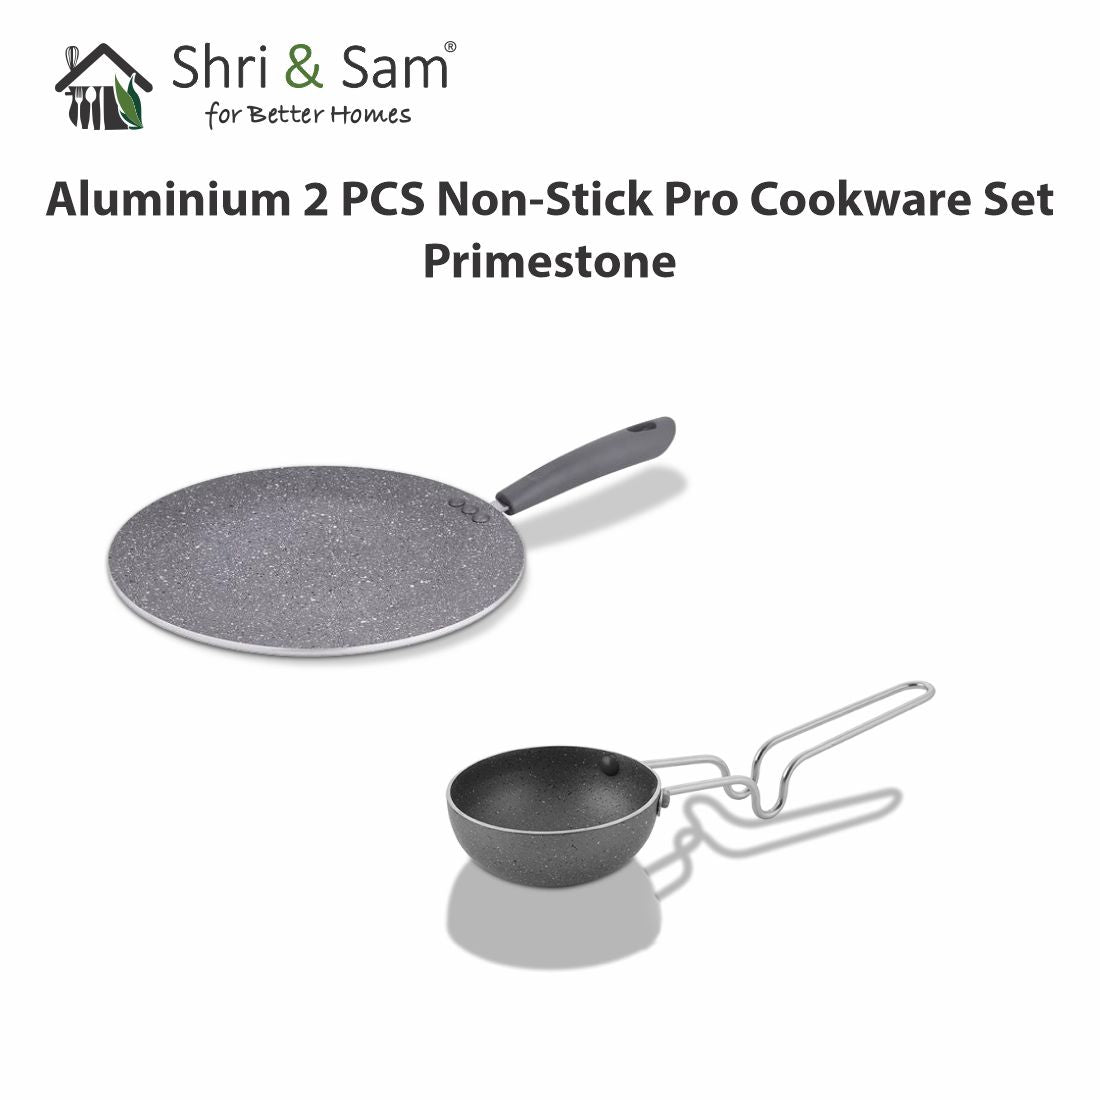 Aluminium 2 PCS Non-Stick Pro Cookware Set Primestone